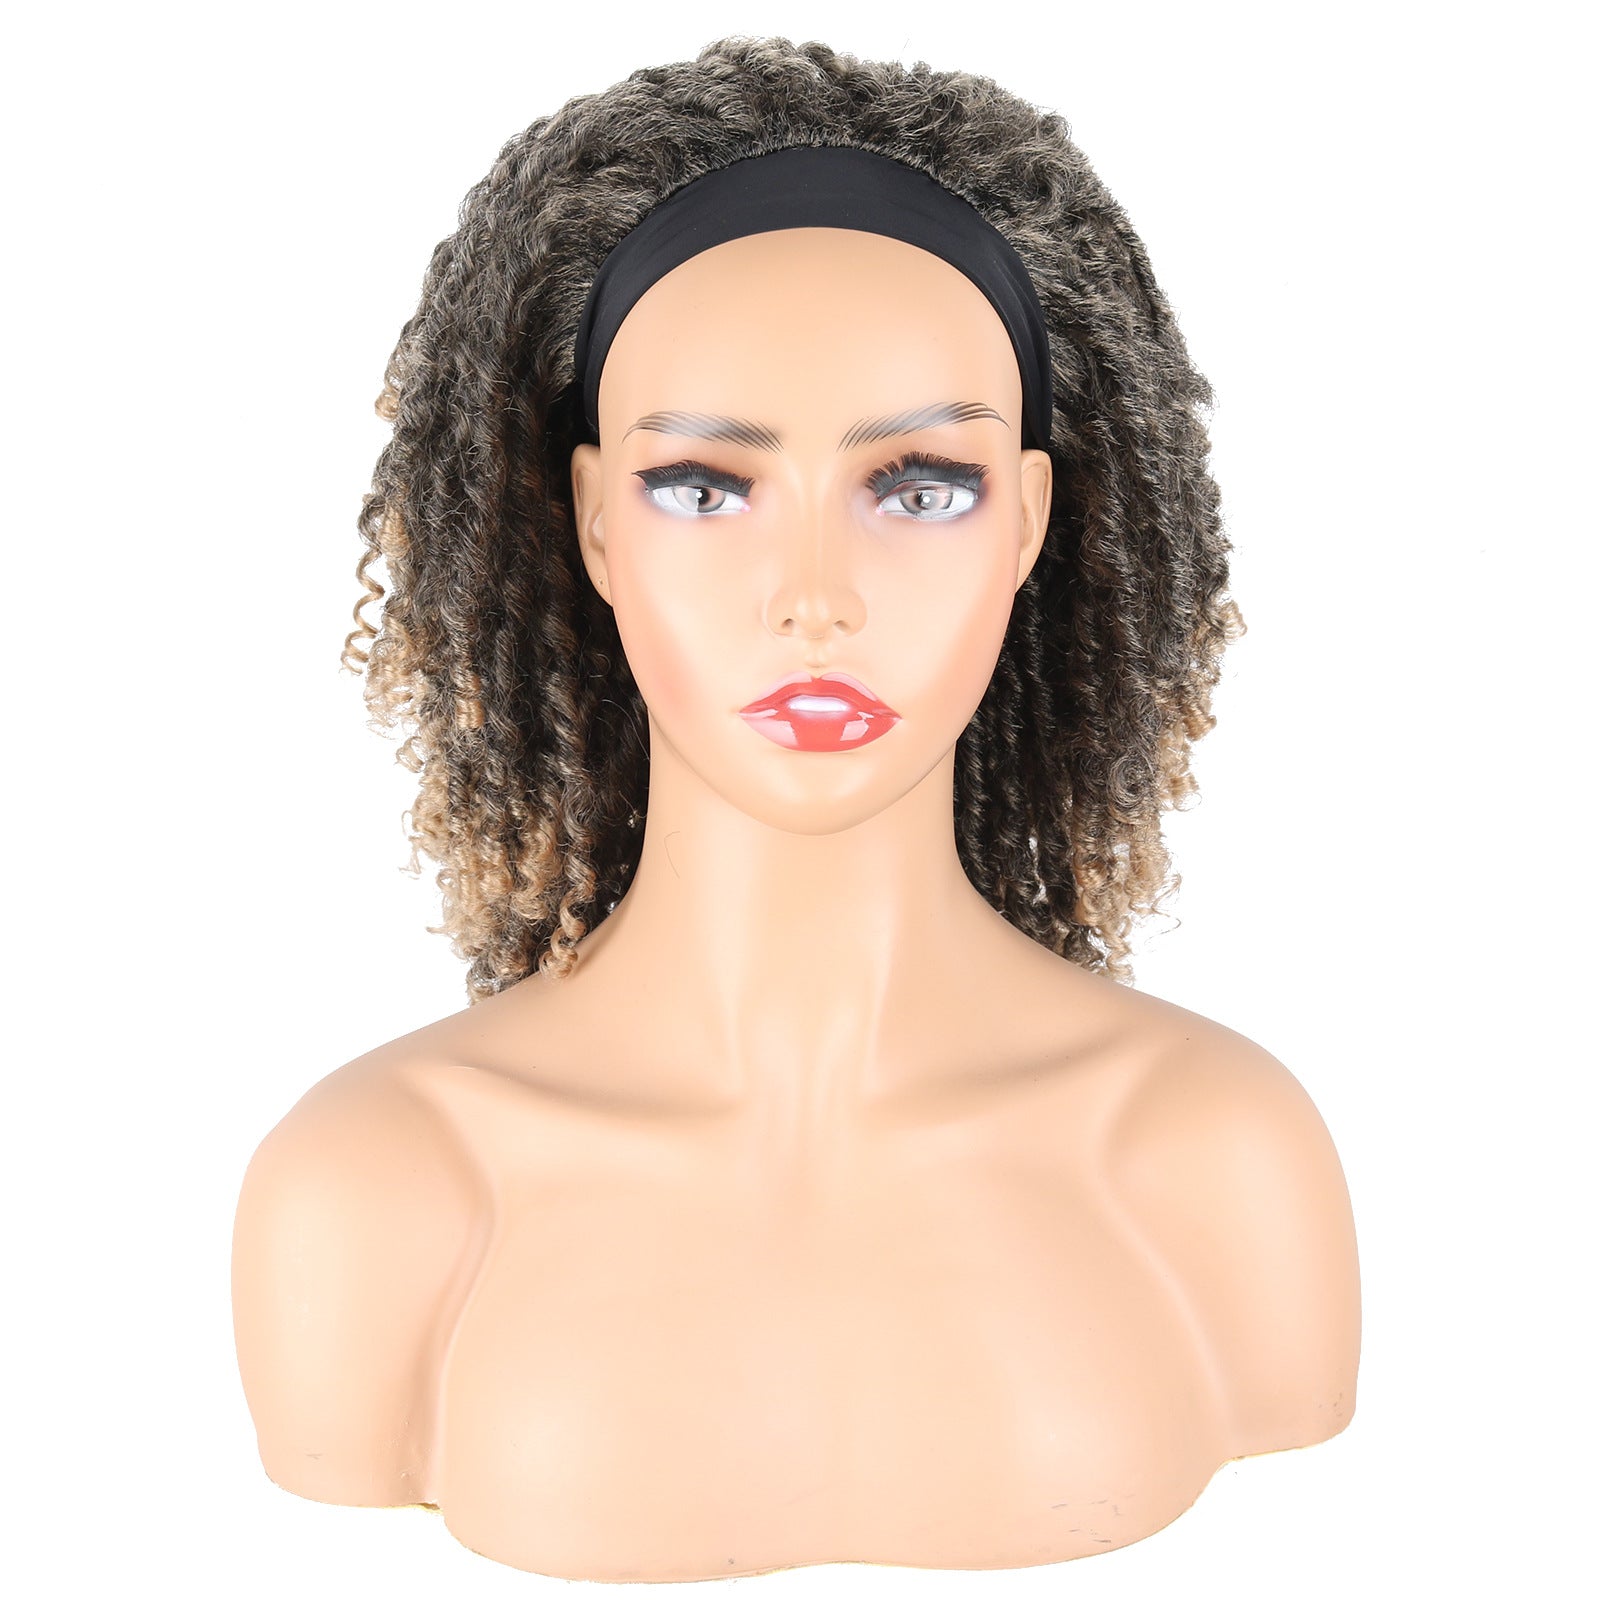 Hair band wig small curl Crochet hair wigs fashion women's hair band Headcover